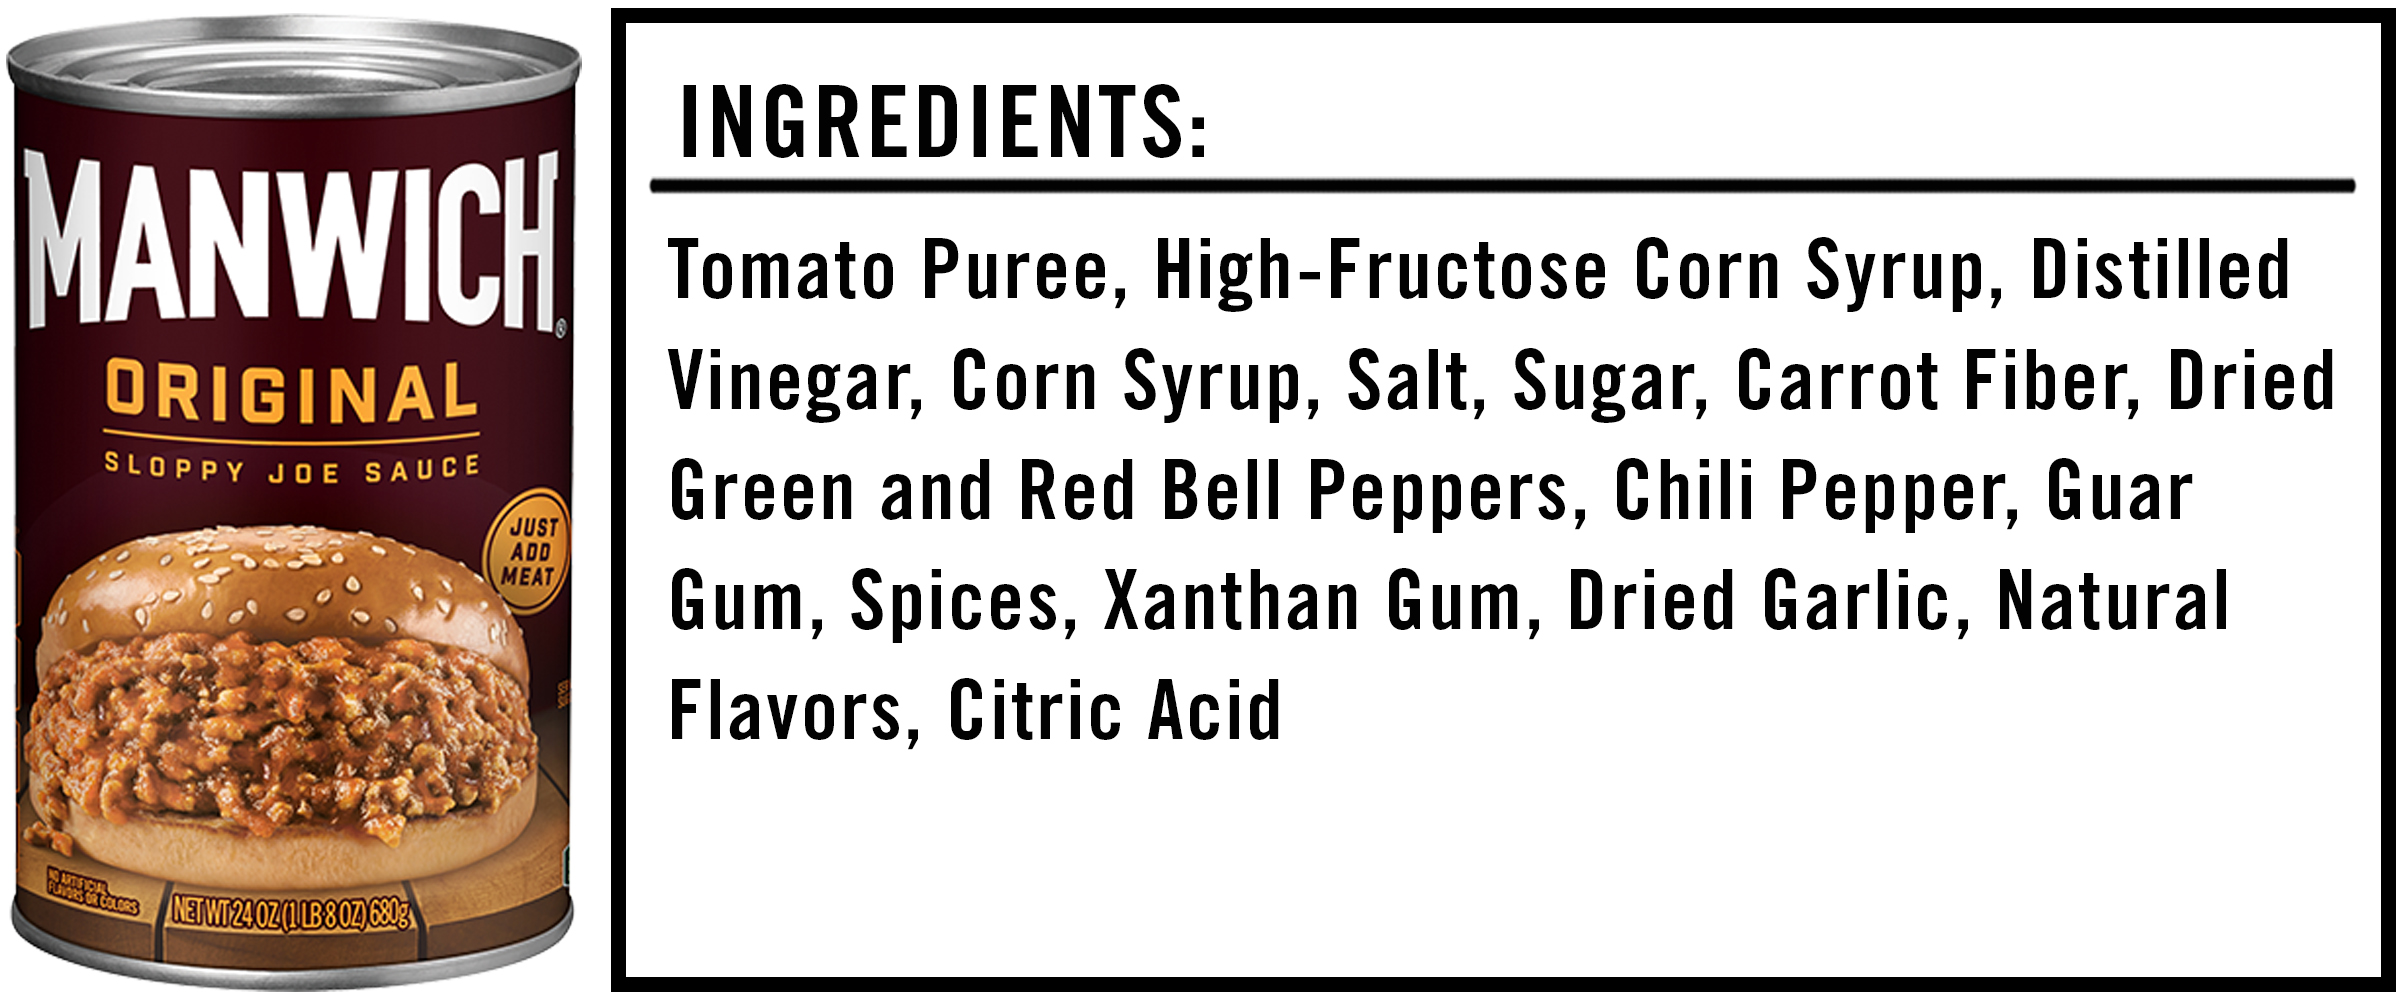 Manwich Ingredients: What's in Manwich Sloppy Joe Sauce?